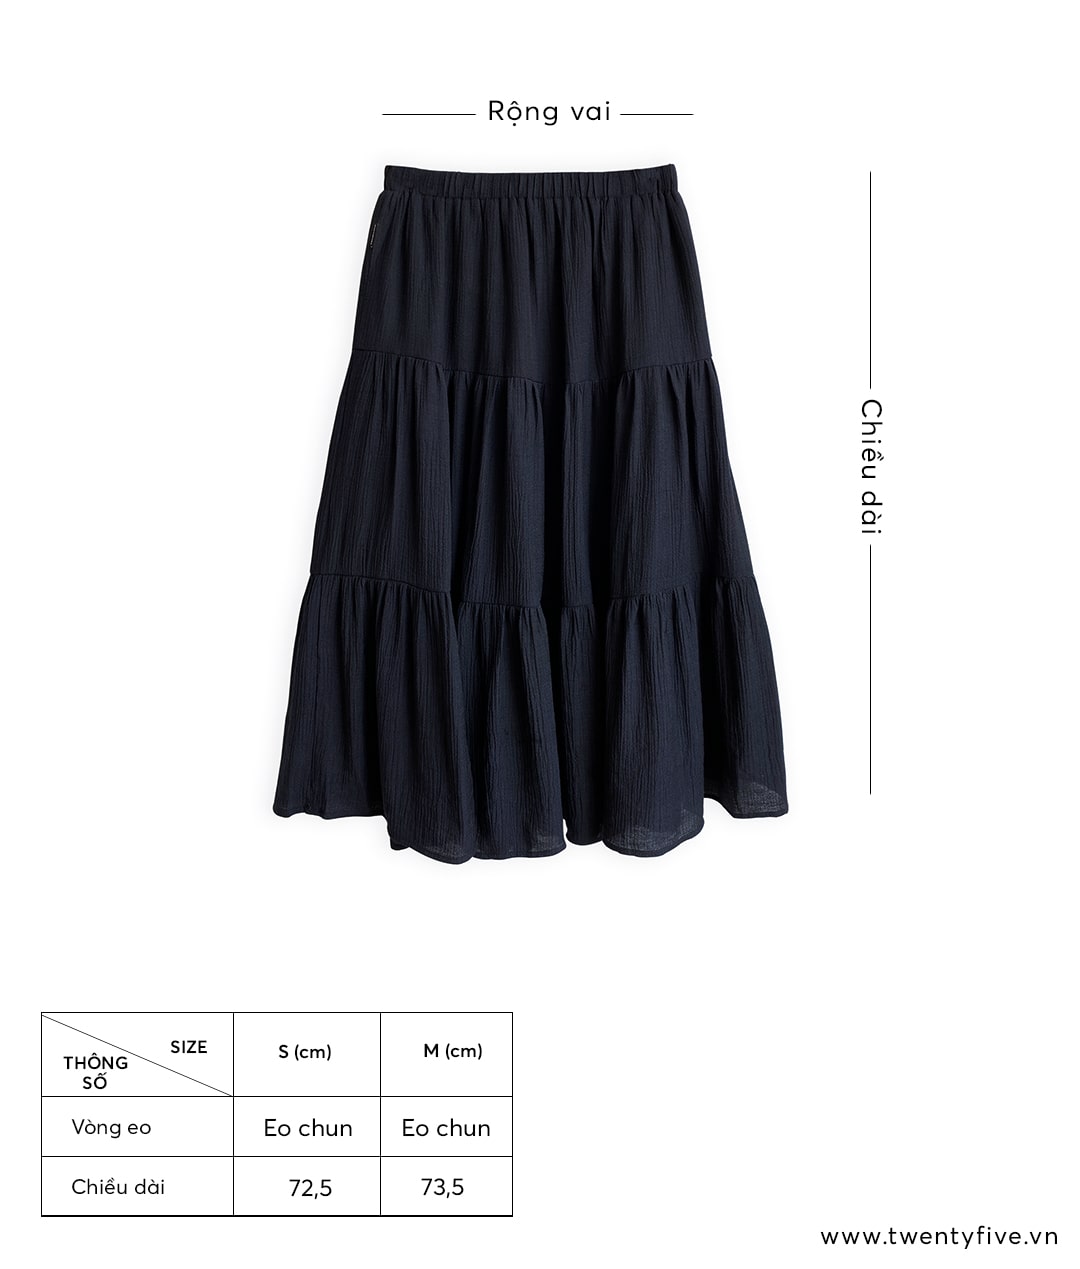 Chân váy nữ 3 tầng dáng dài 🎀 đầm nữ tiểu thư 2 lớp chất liệu voan 2 màu:  trắng, đen cạp chun - Đầm, váy nữ | ThờiTrangNữ.vn